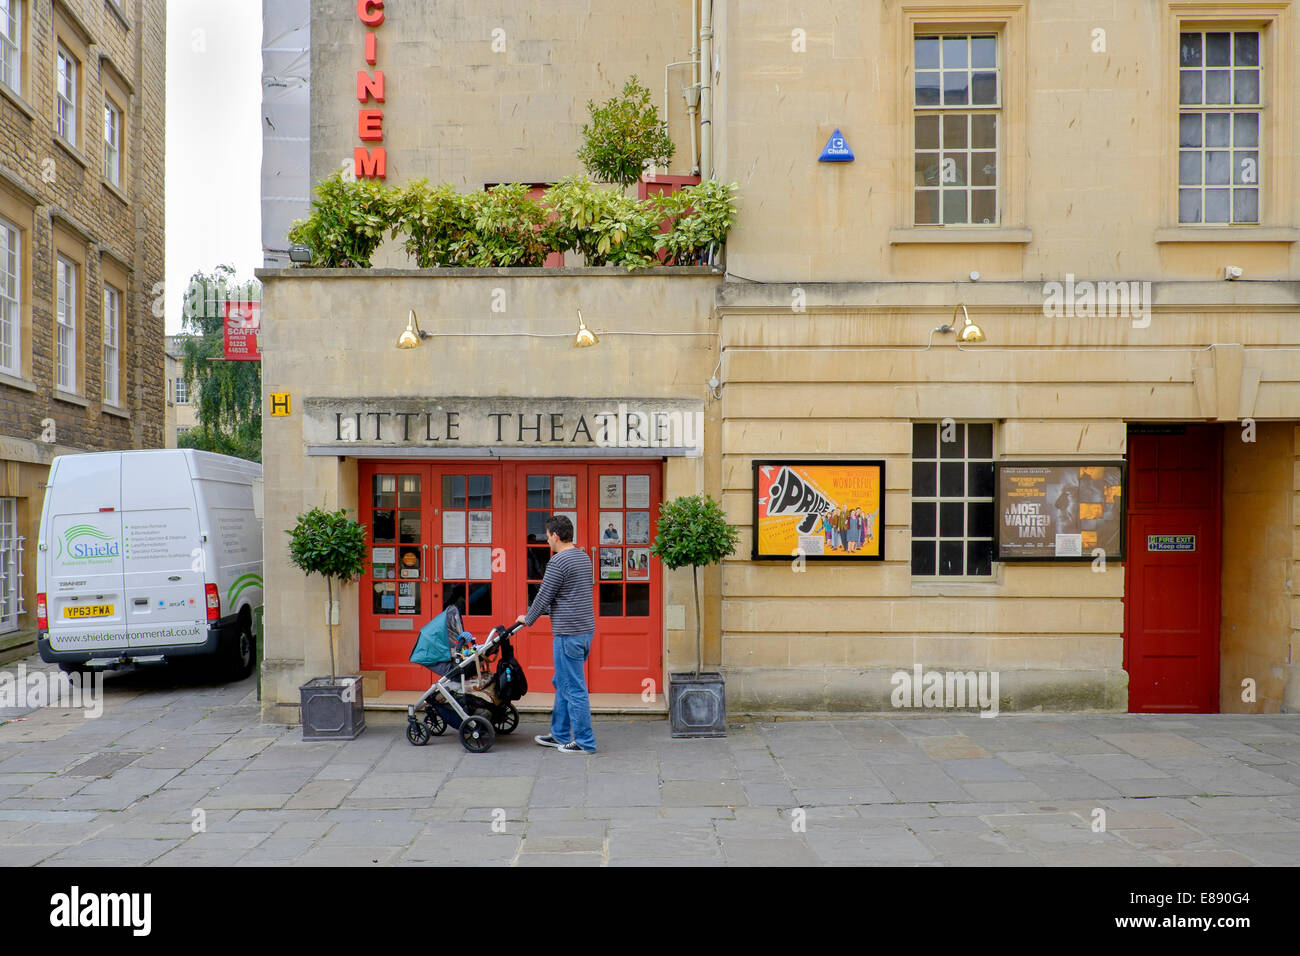 Un homme poussant un landau attend à l'extérieur du petit théâtre cinema à Bath, Somerset, Angleterre, Royaume-Uni Banque D'Images